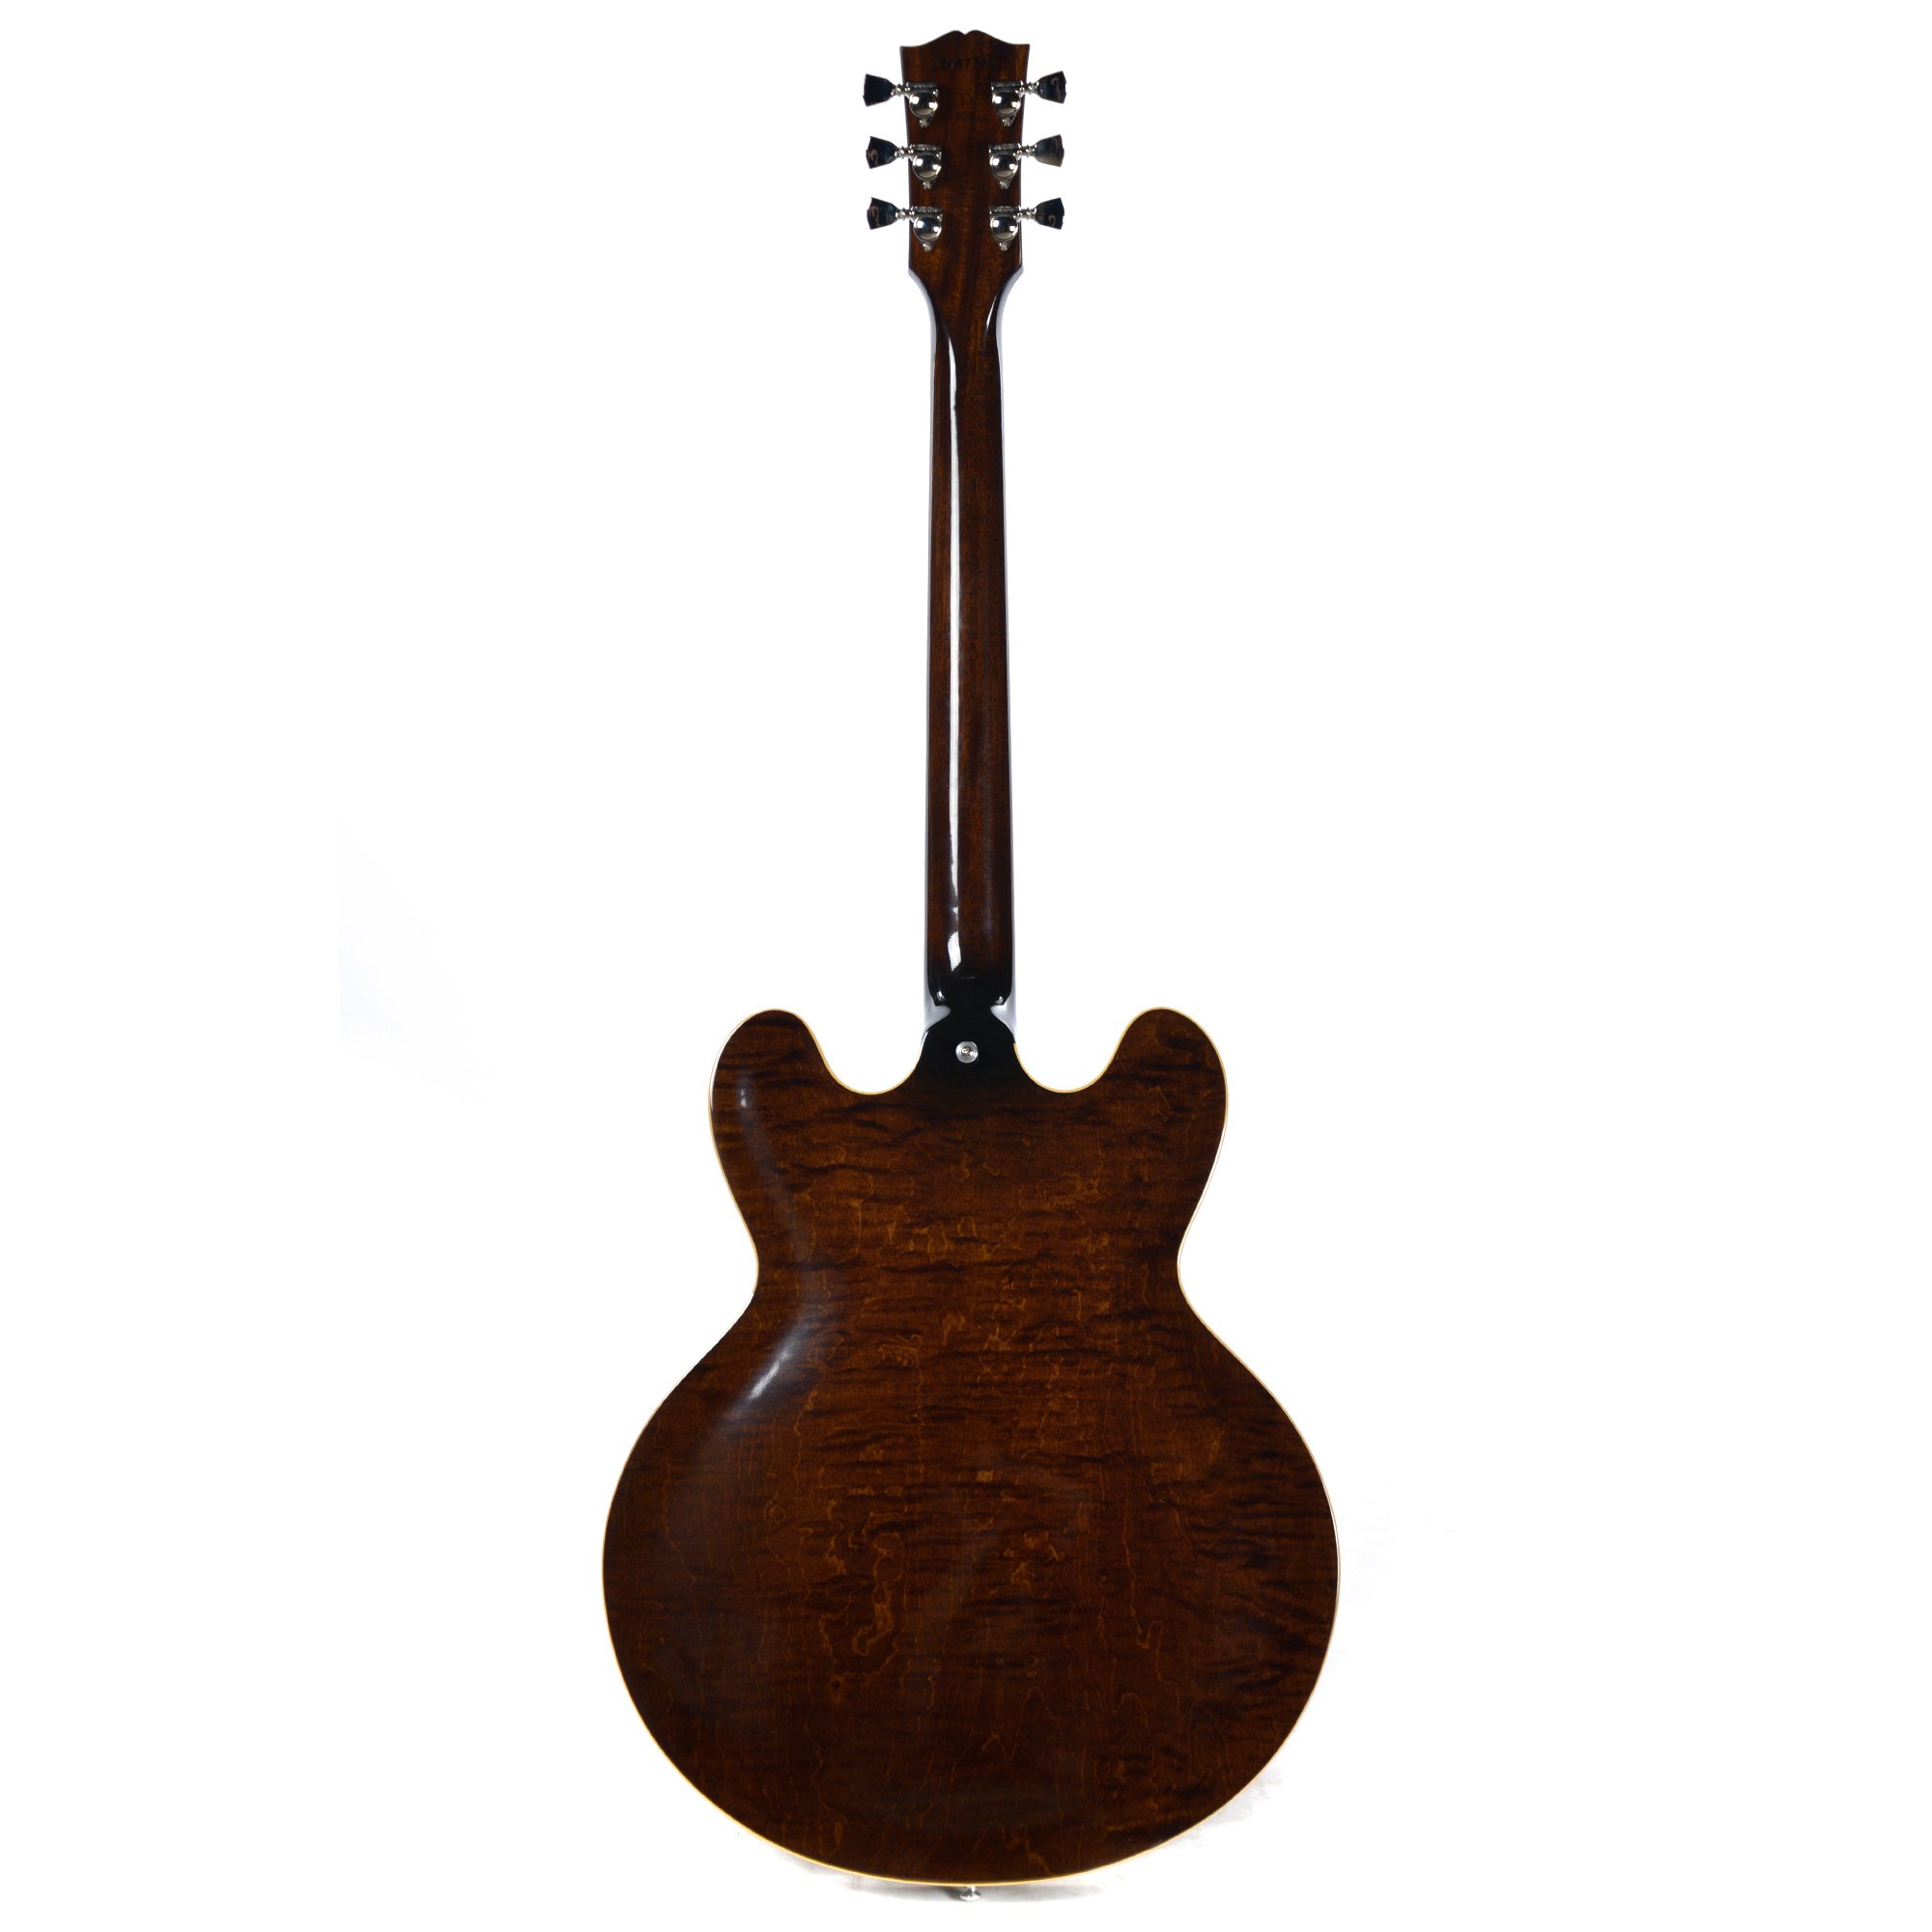 Gibson Es-335 Figured 2018 Ltd - Antique Walnut - Semi hollow elektriche gitaar - Variation 1